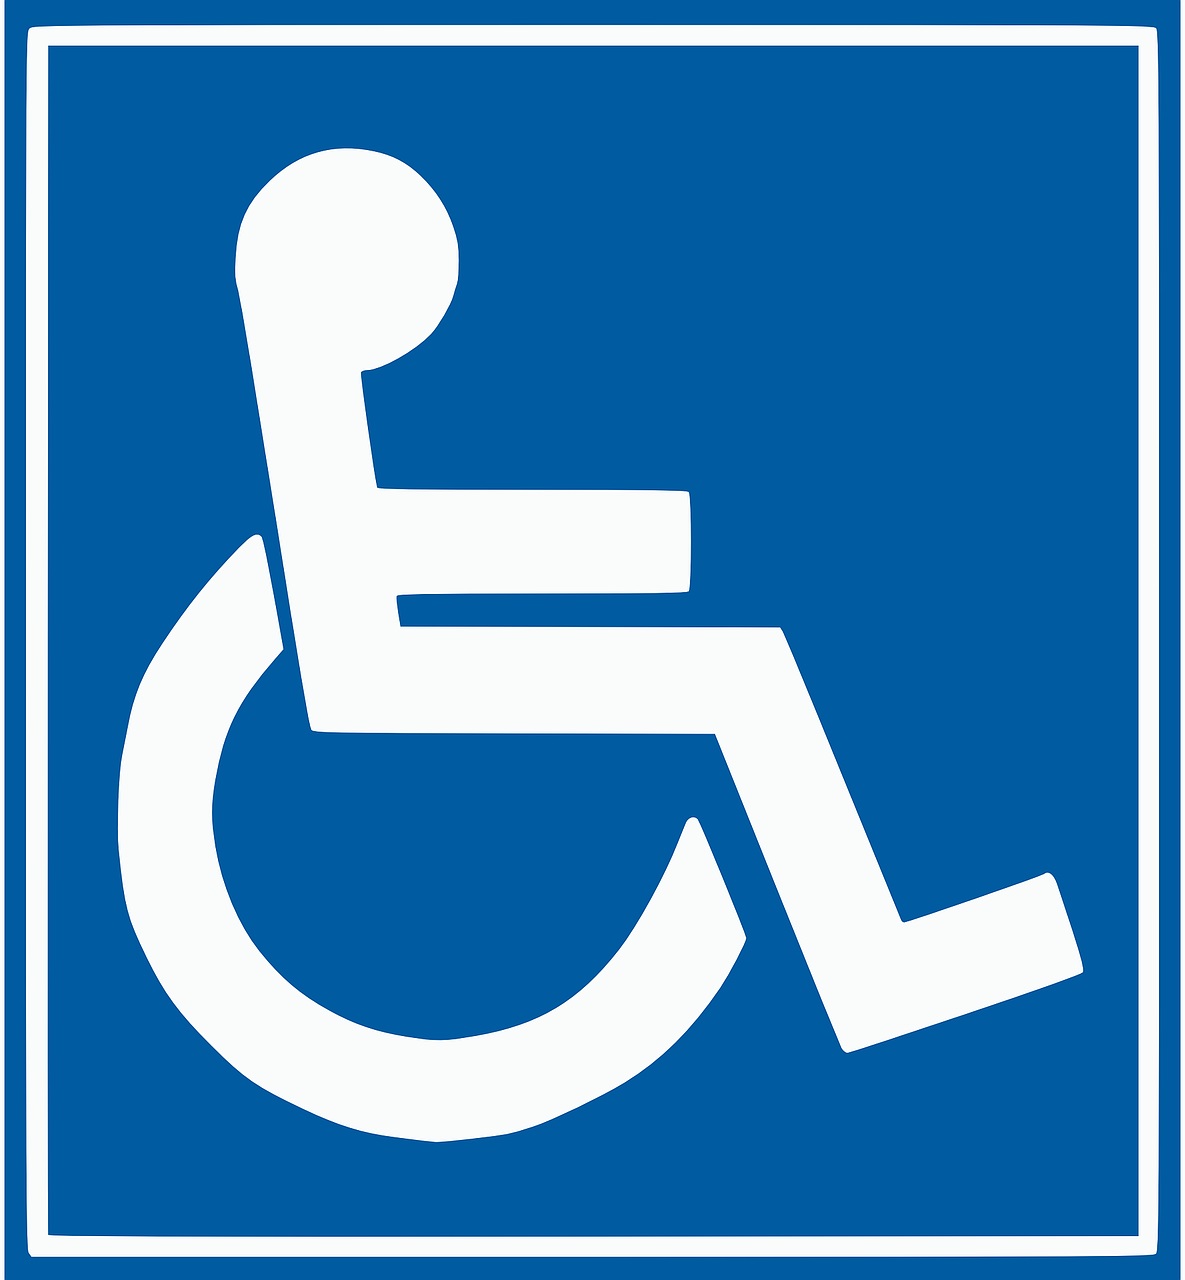 Hier wird ein Rollstuhlfahrer angezeigt